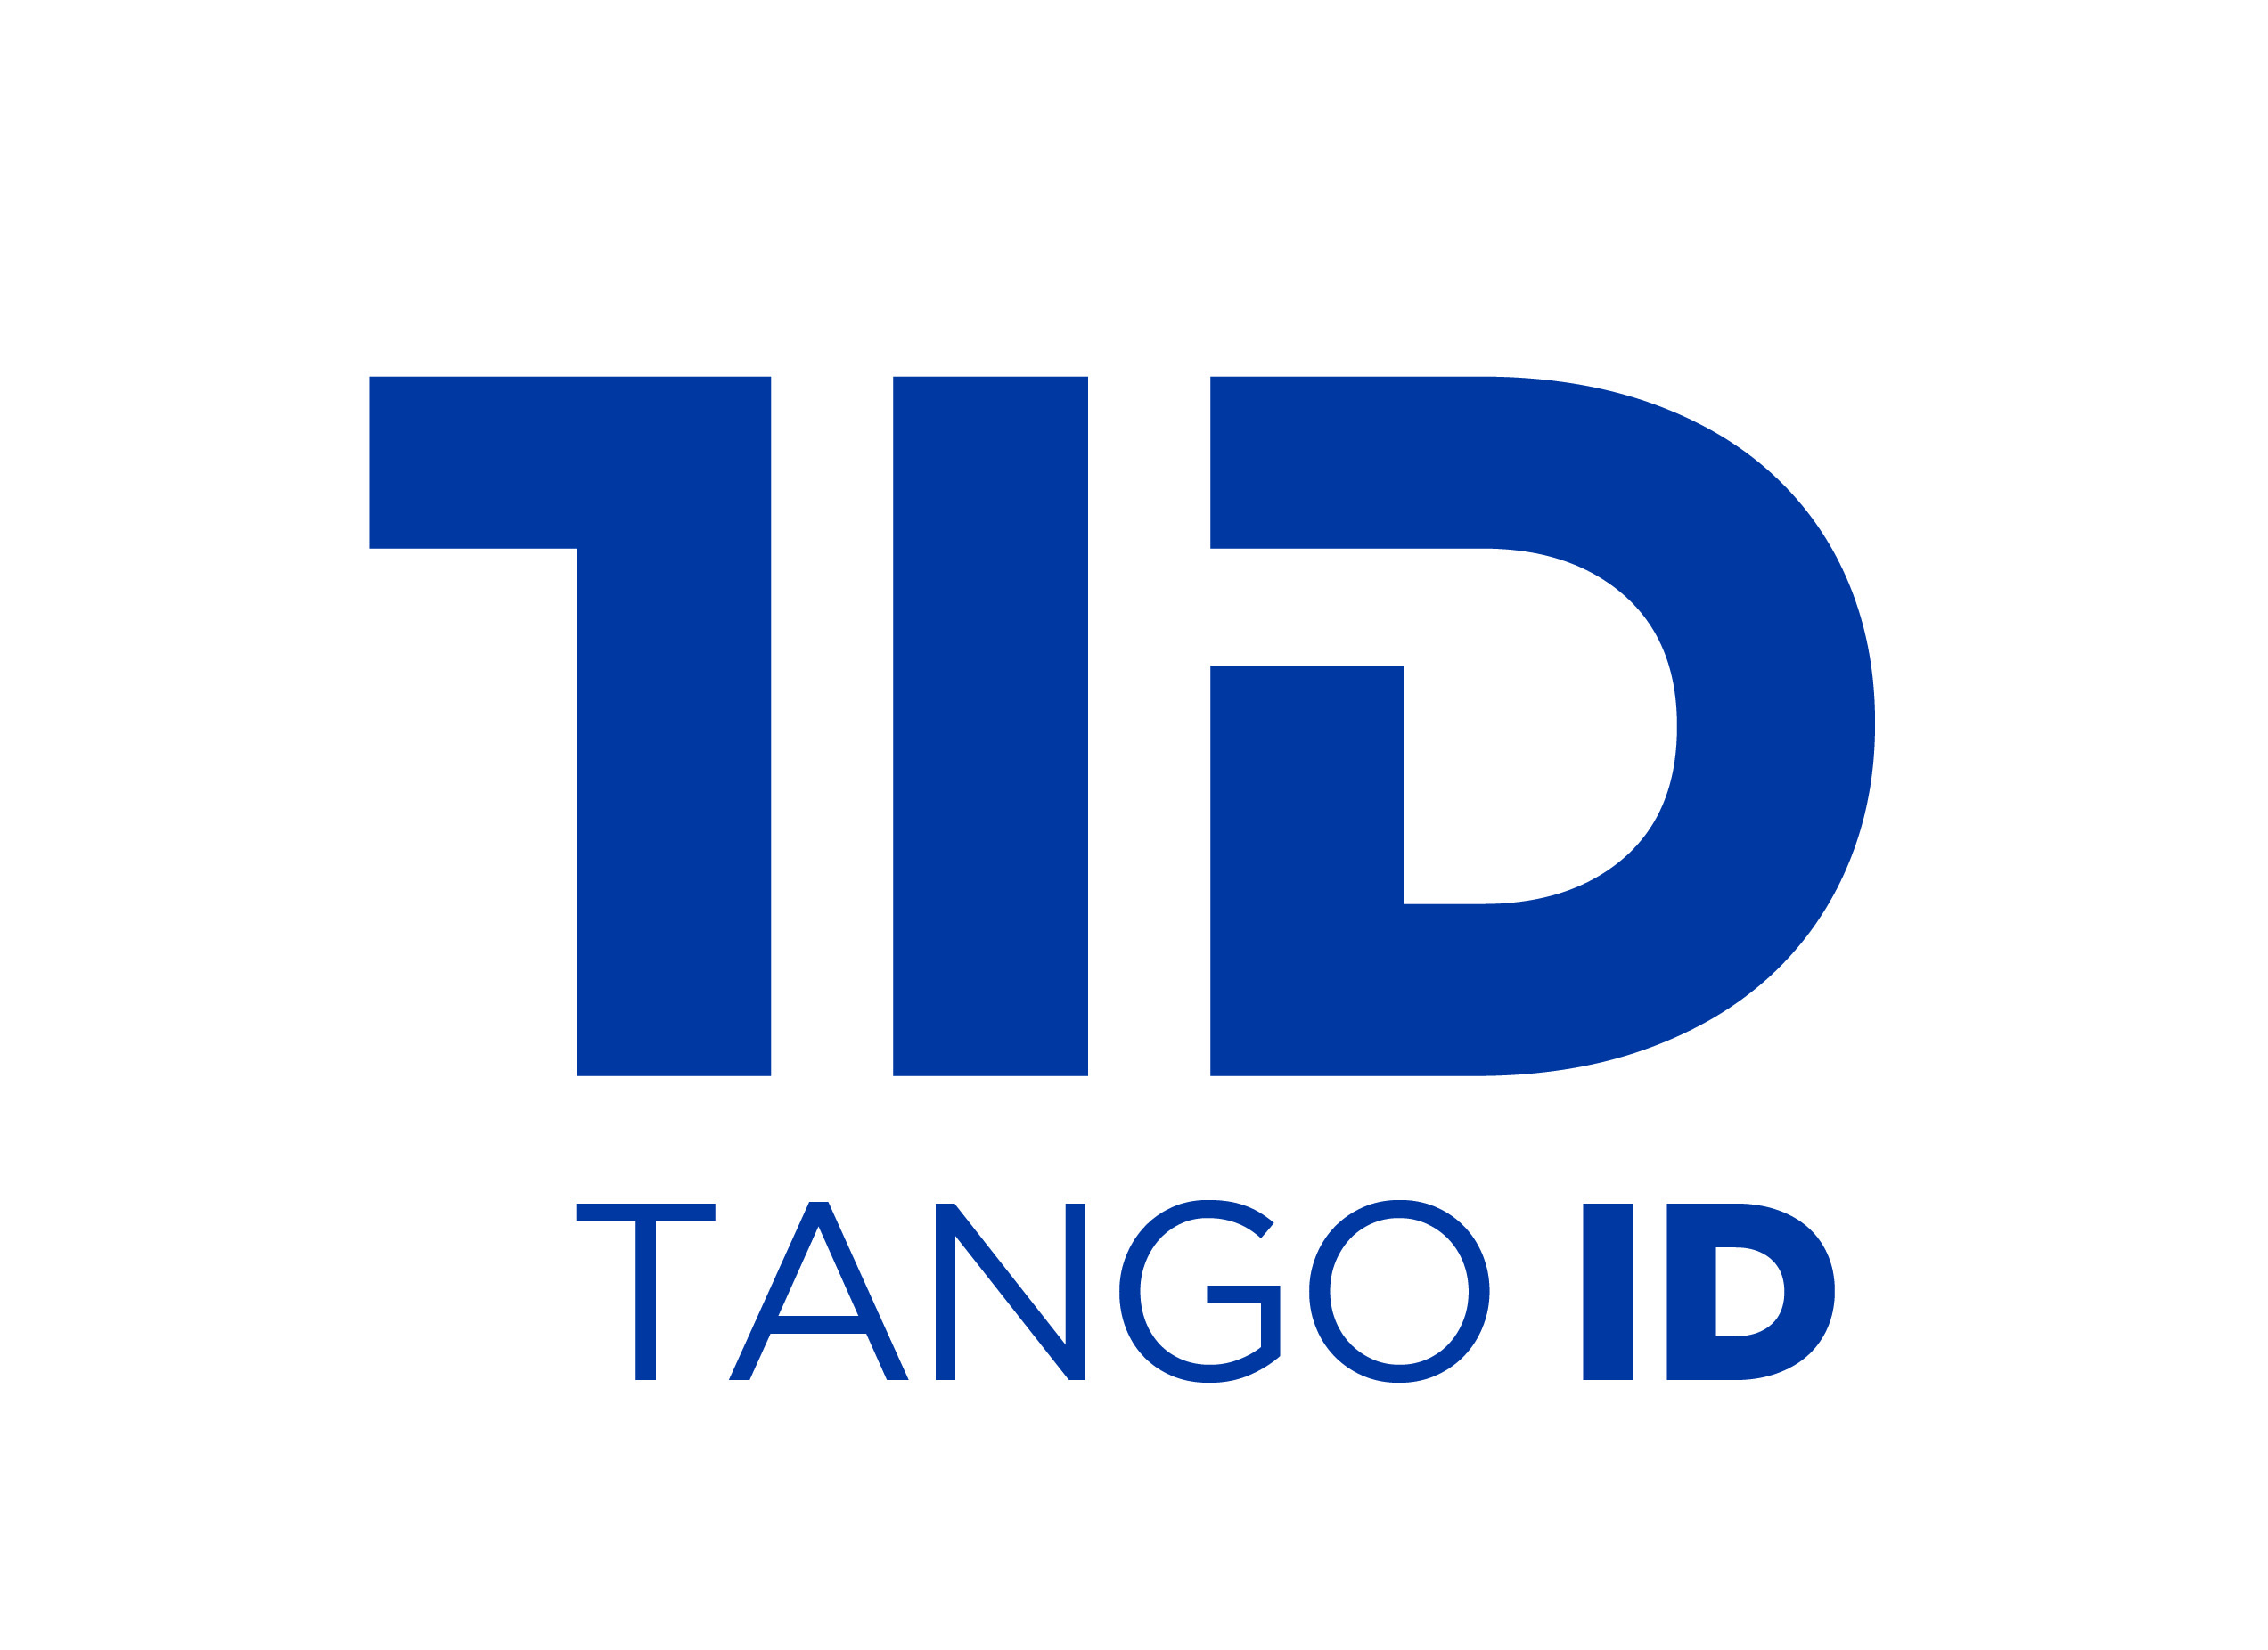 TANGO ID